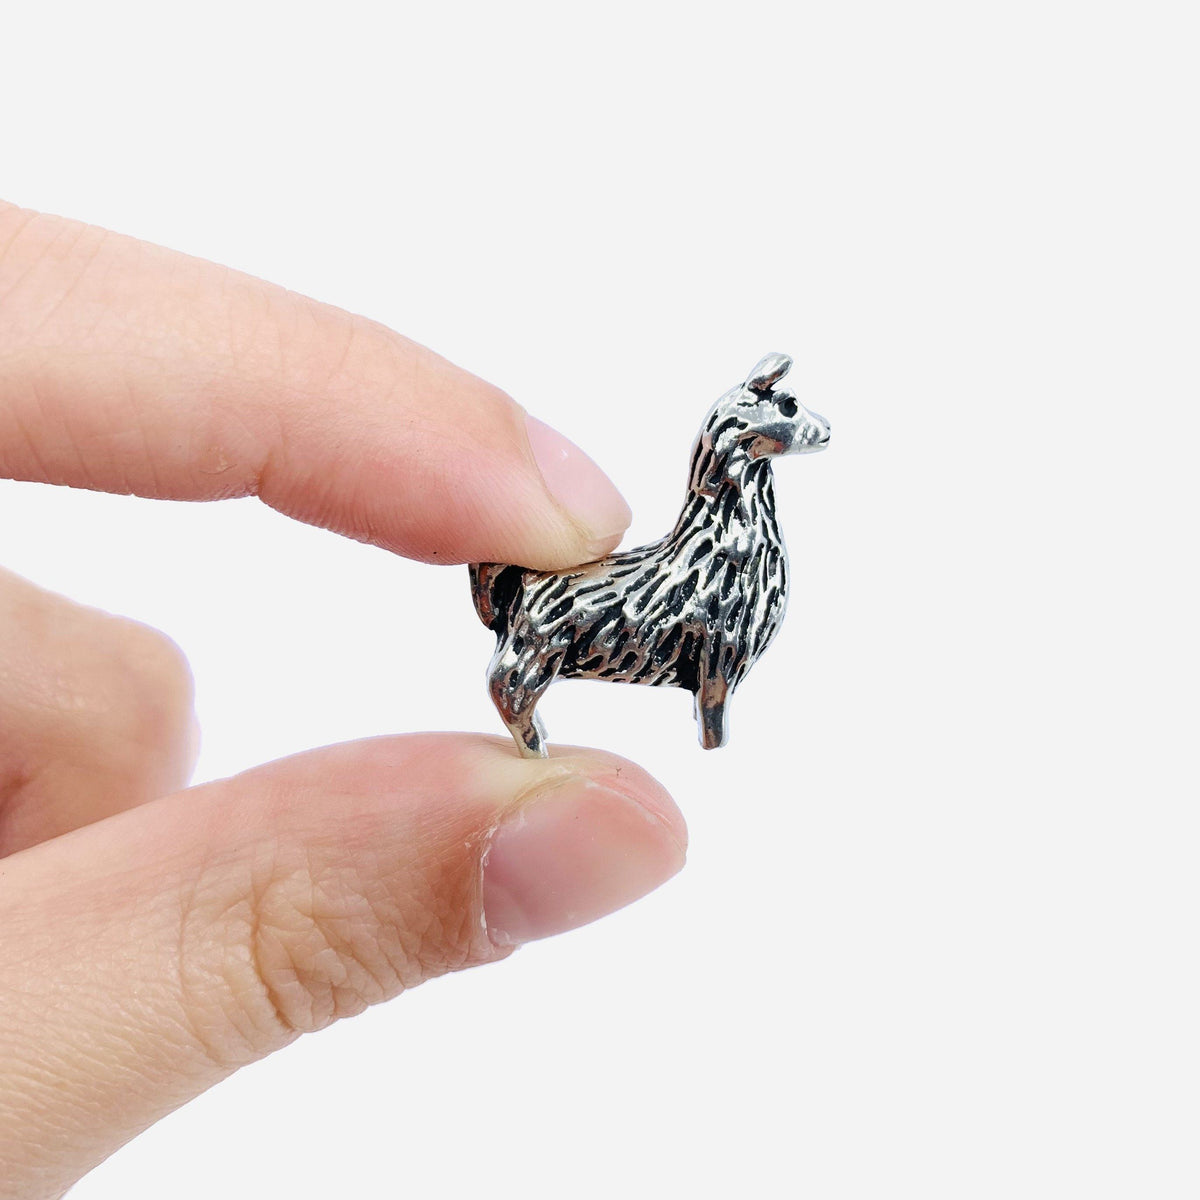 Miniature Pewter Figurine, Llama Basic Spirit 